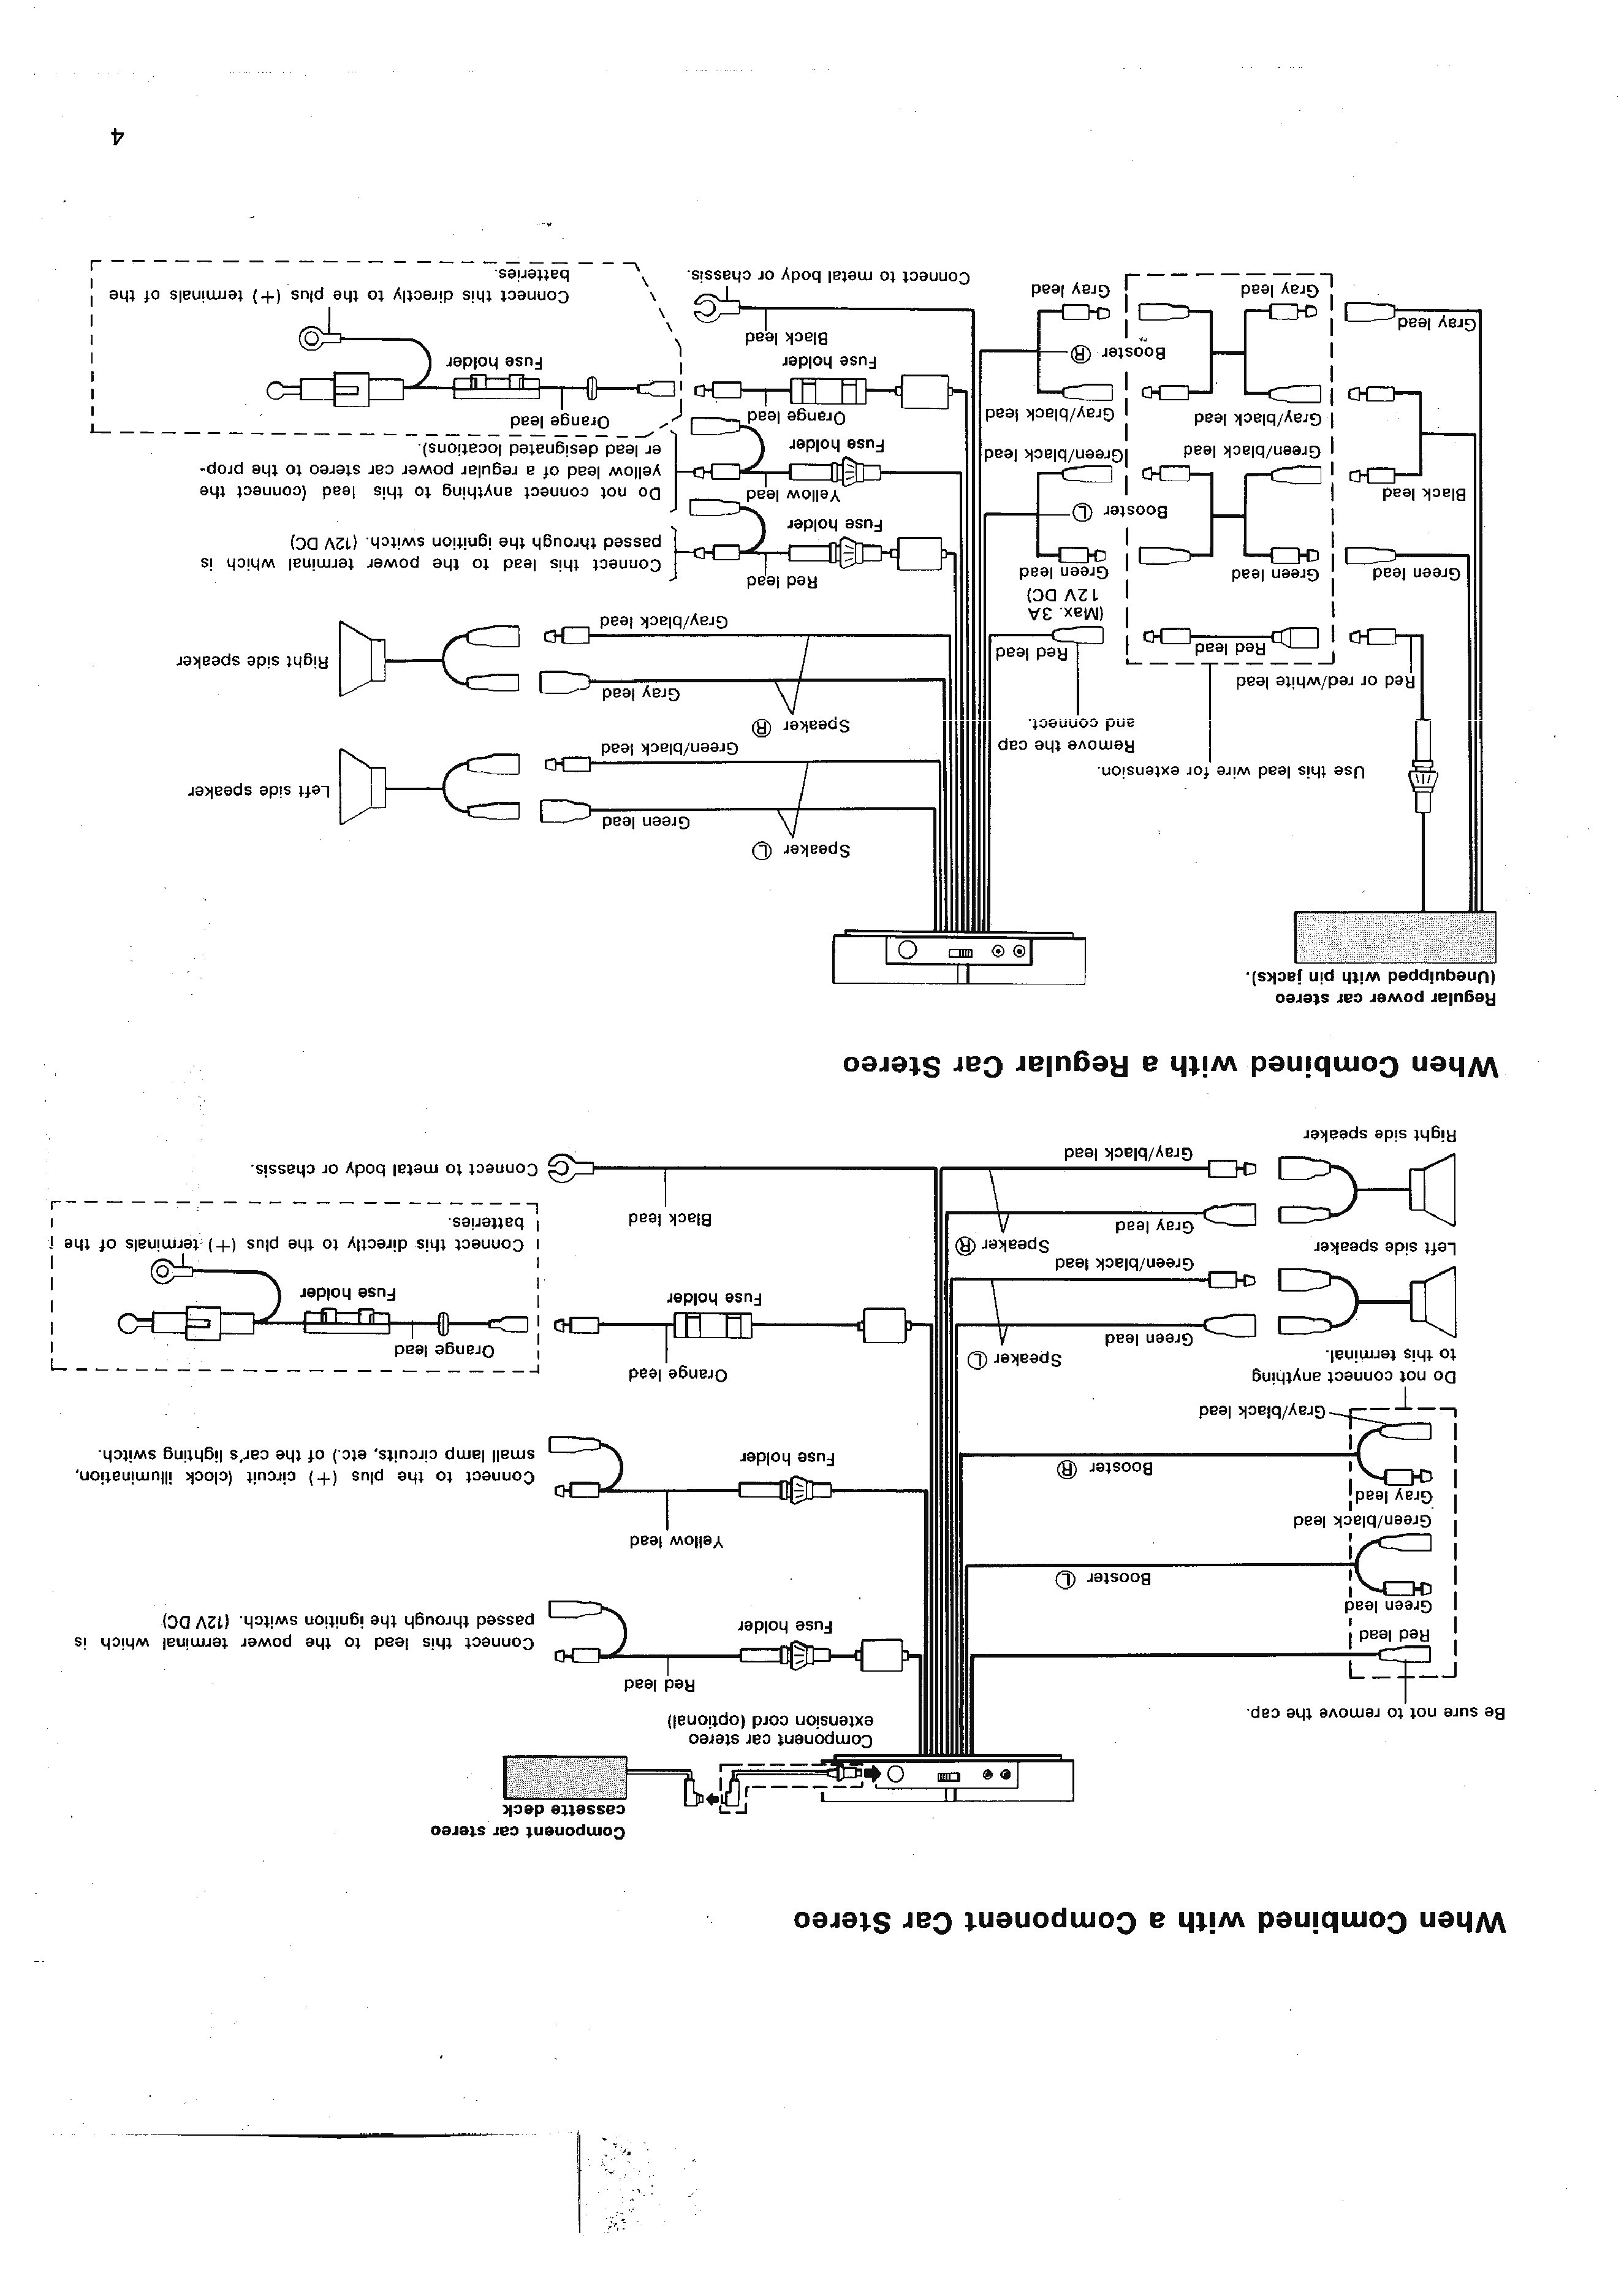 Pioneer Deh 1300mp Wiring Diagram Wiring Diagram for Pioneer Deh 150mp Of Pioneer Deh 1300mp Wiring Diagram